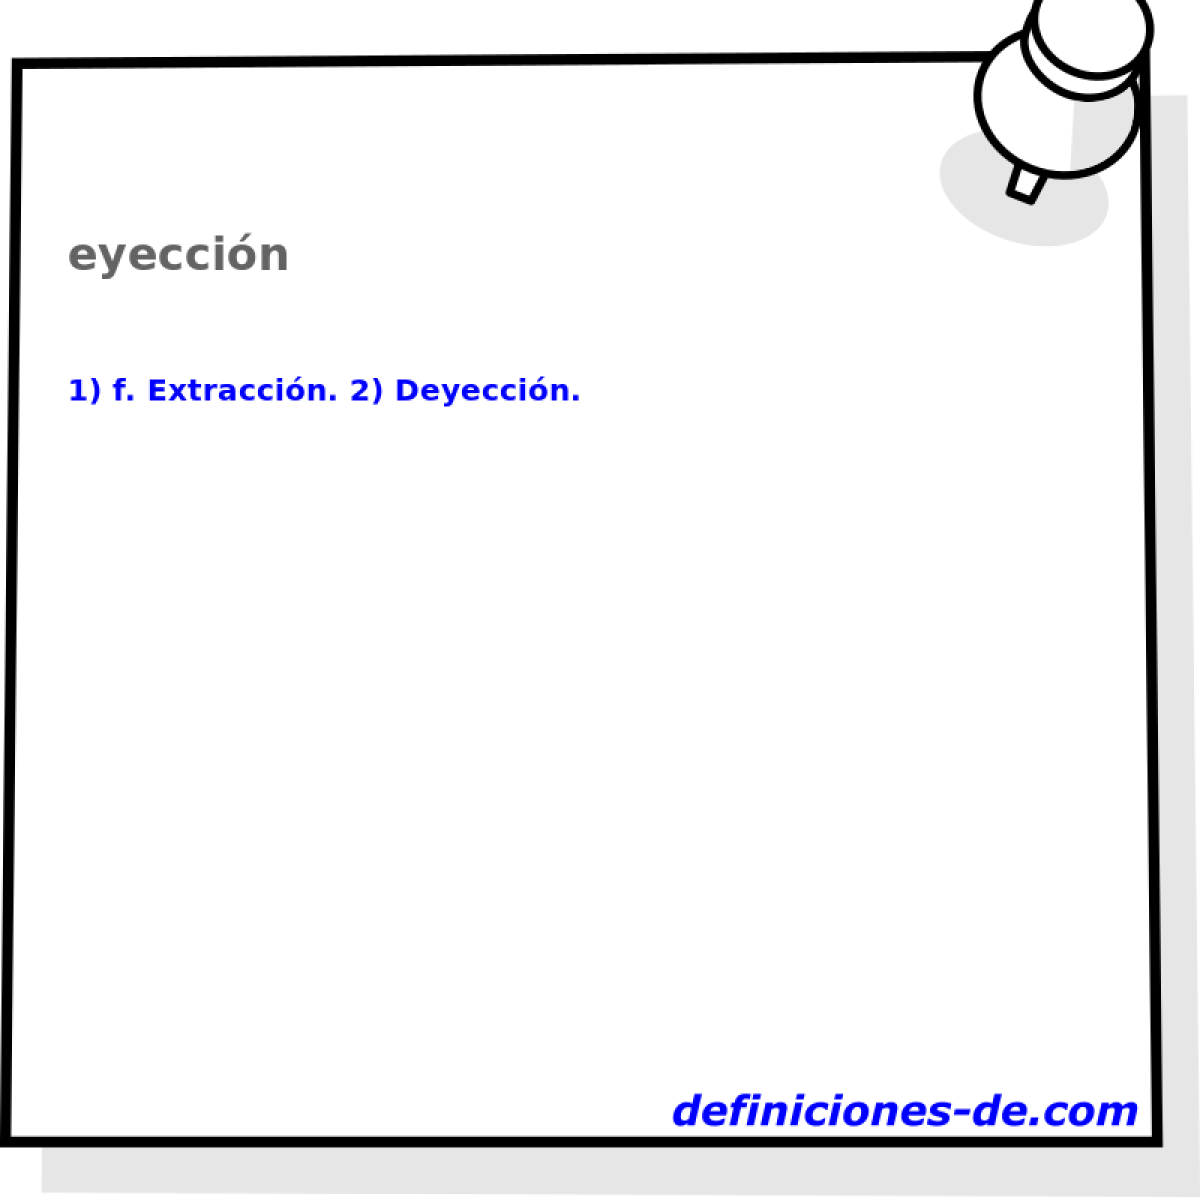 eyeccin 